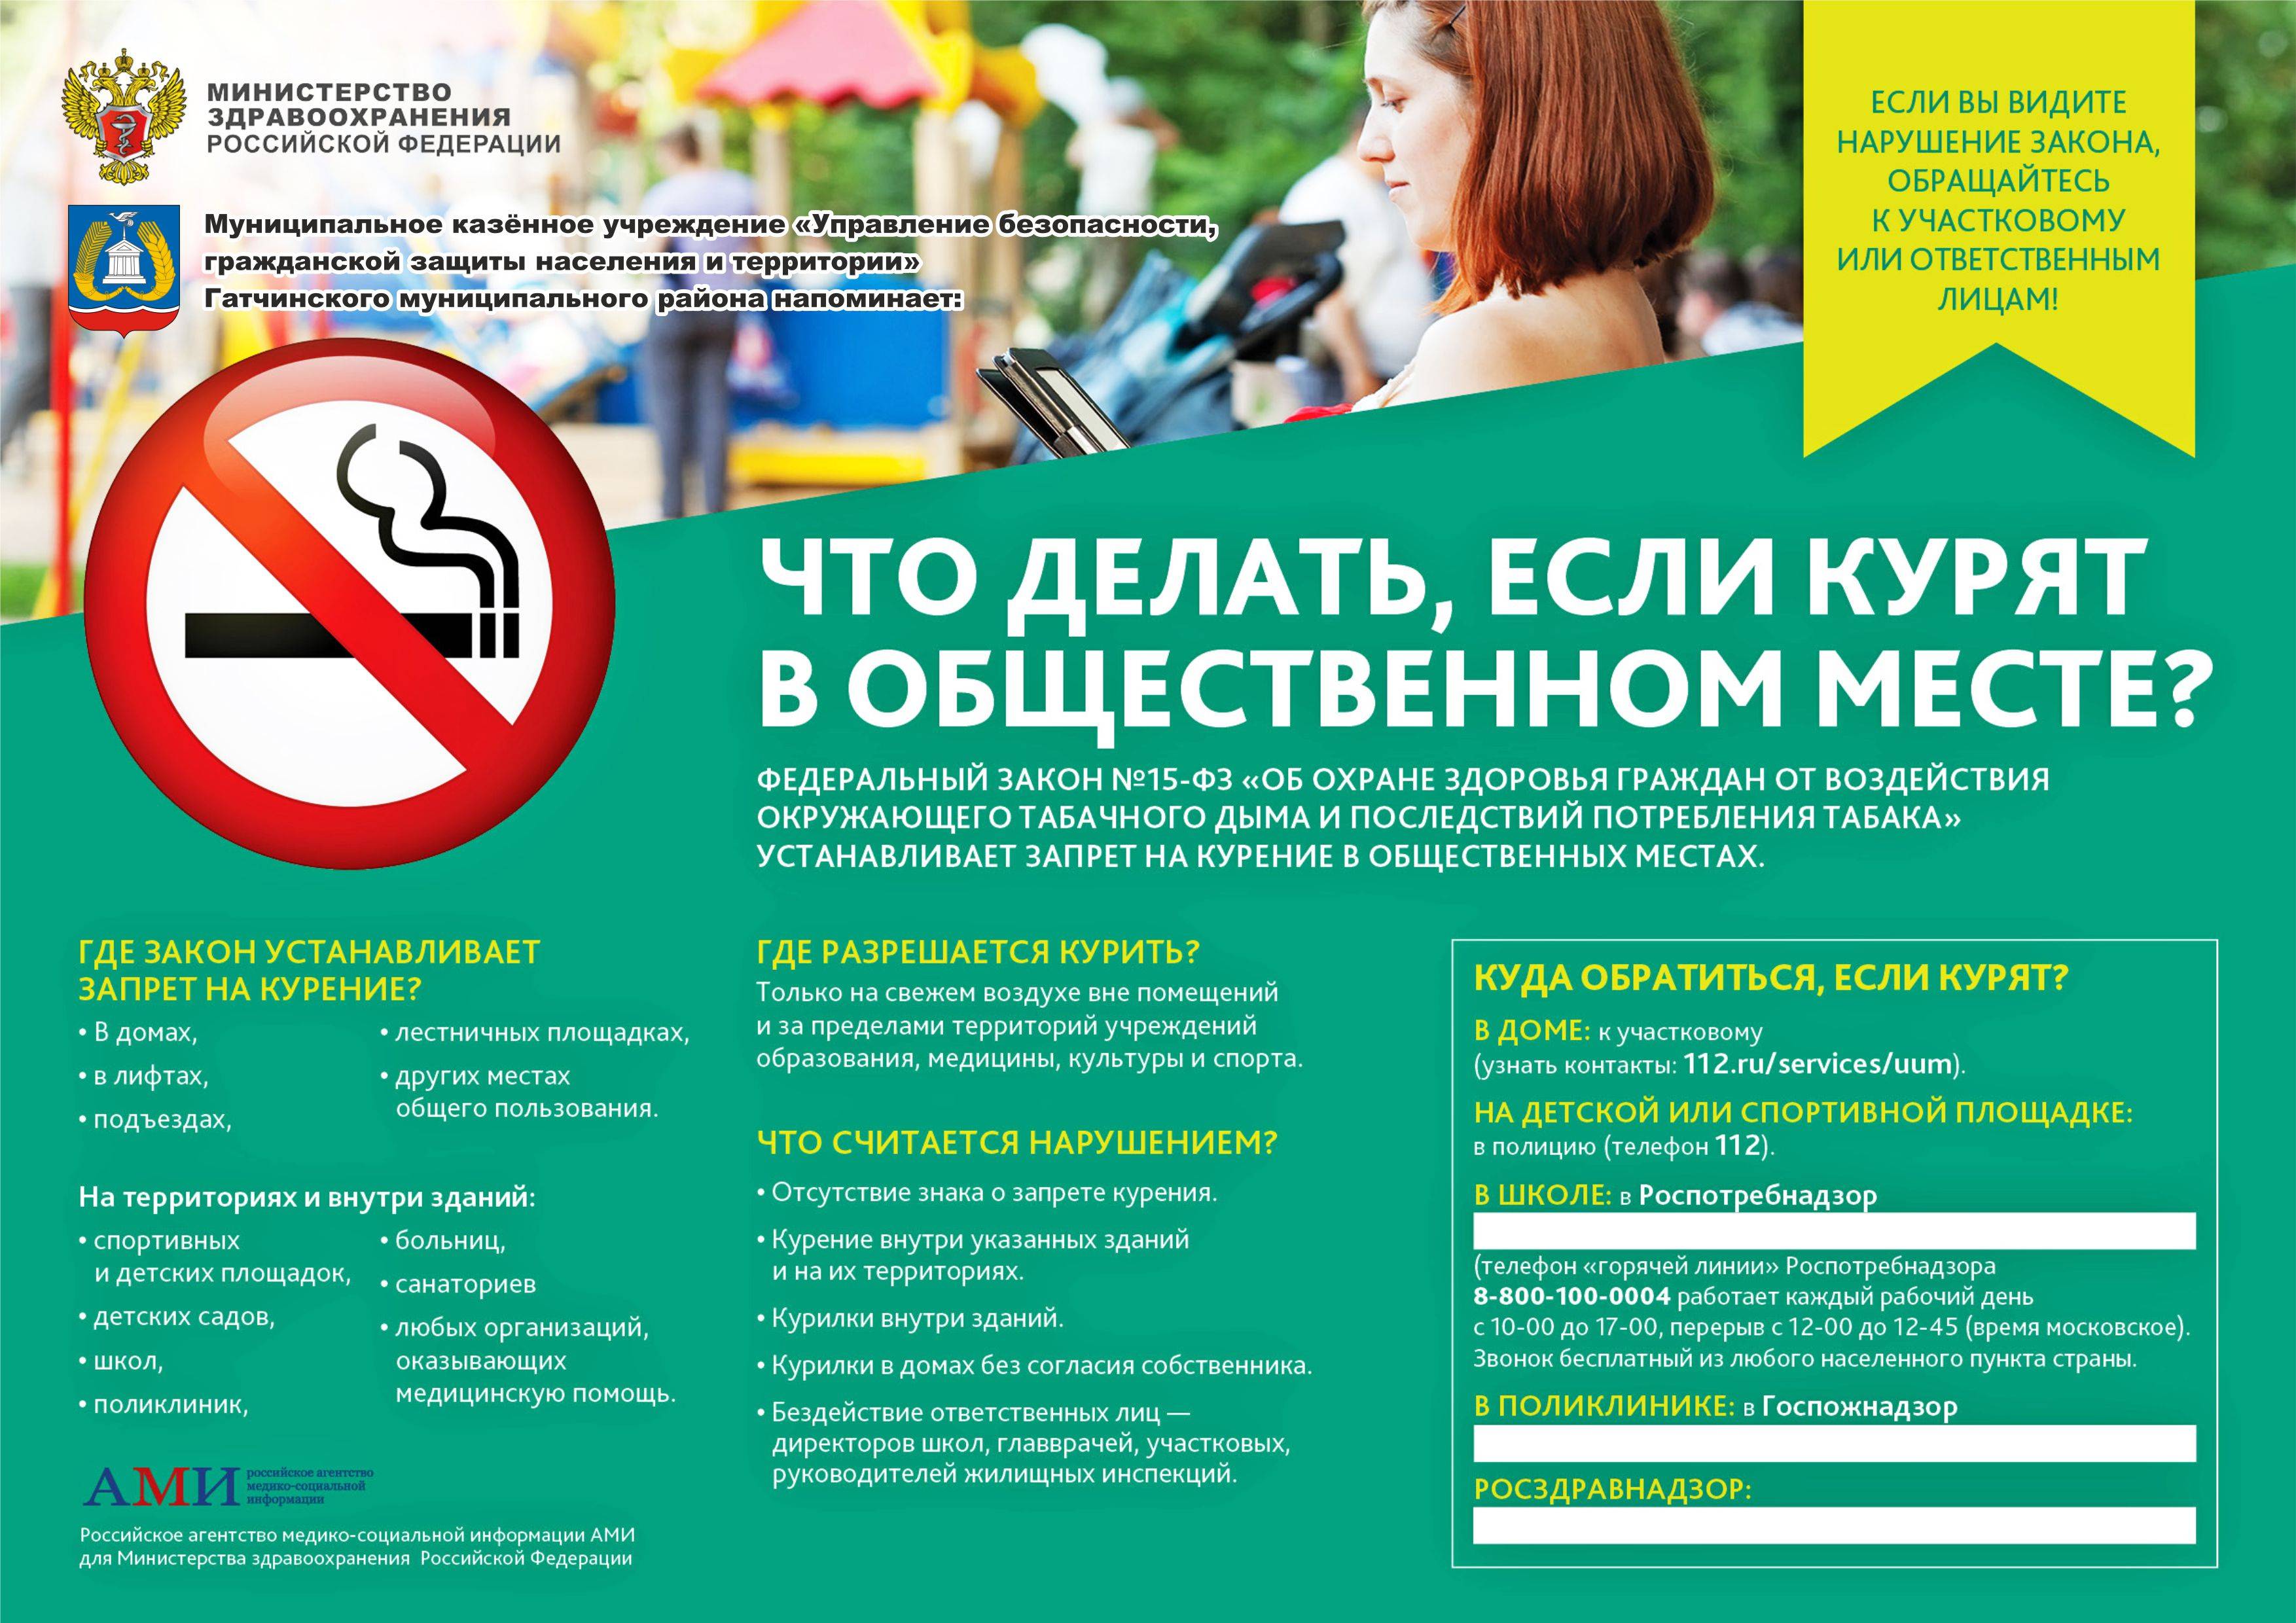 Места для курения: требования и порядок организации